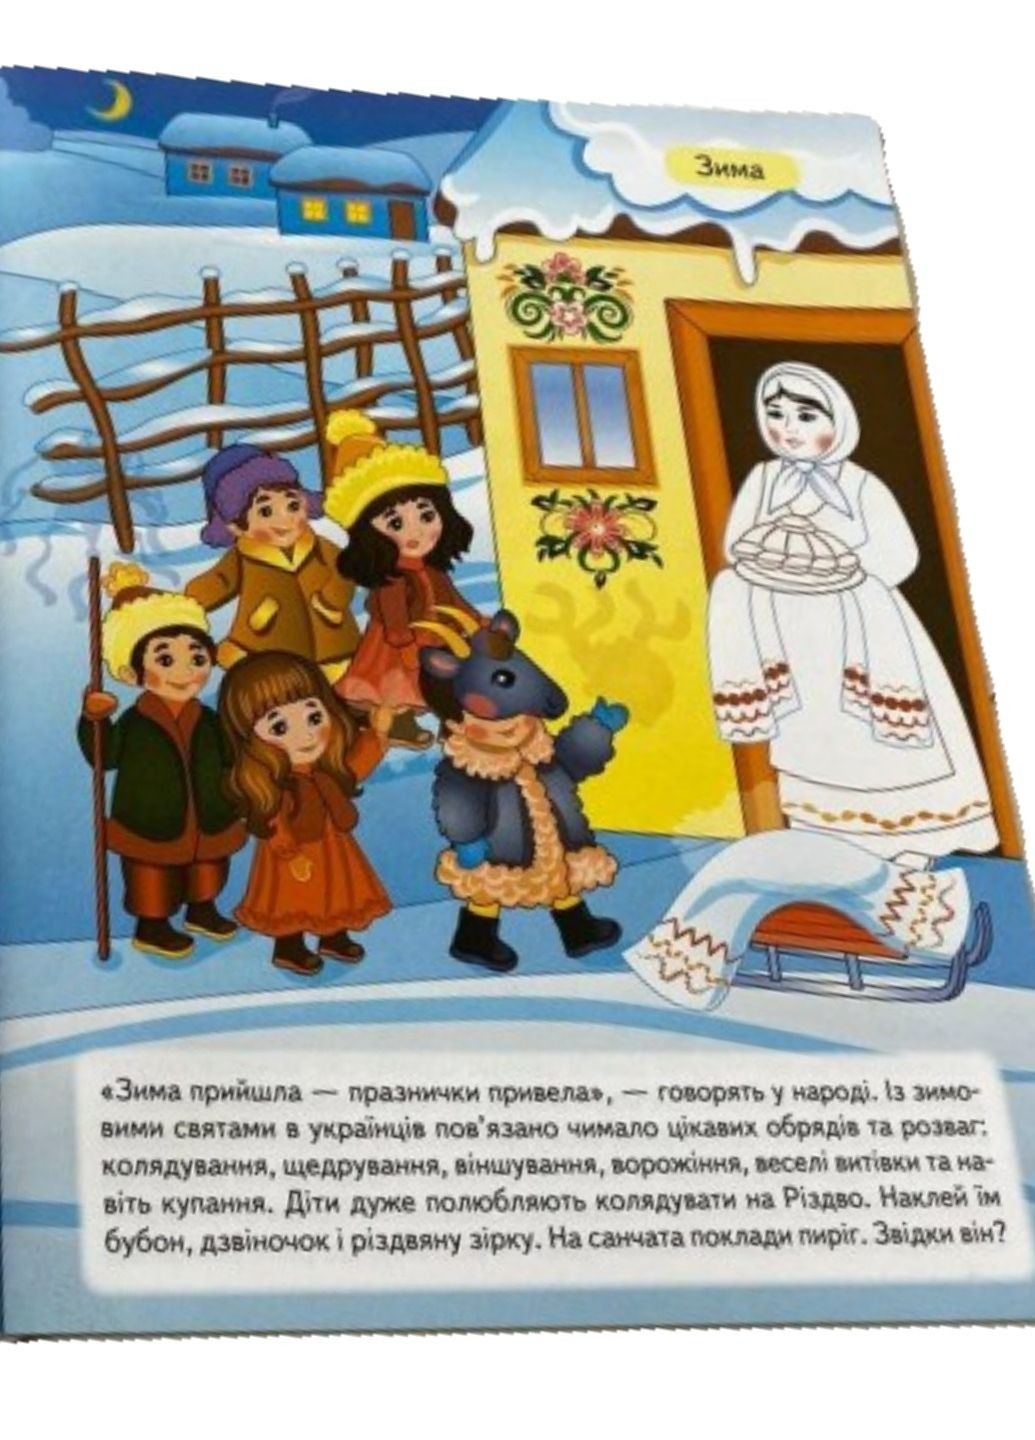 Наша Украина. 33 наклейки с заданиями + раскраски. Украинские традиции. Народные праздники Пегас (268982575)